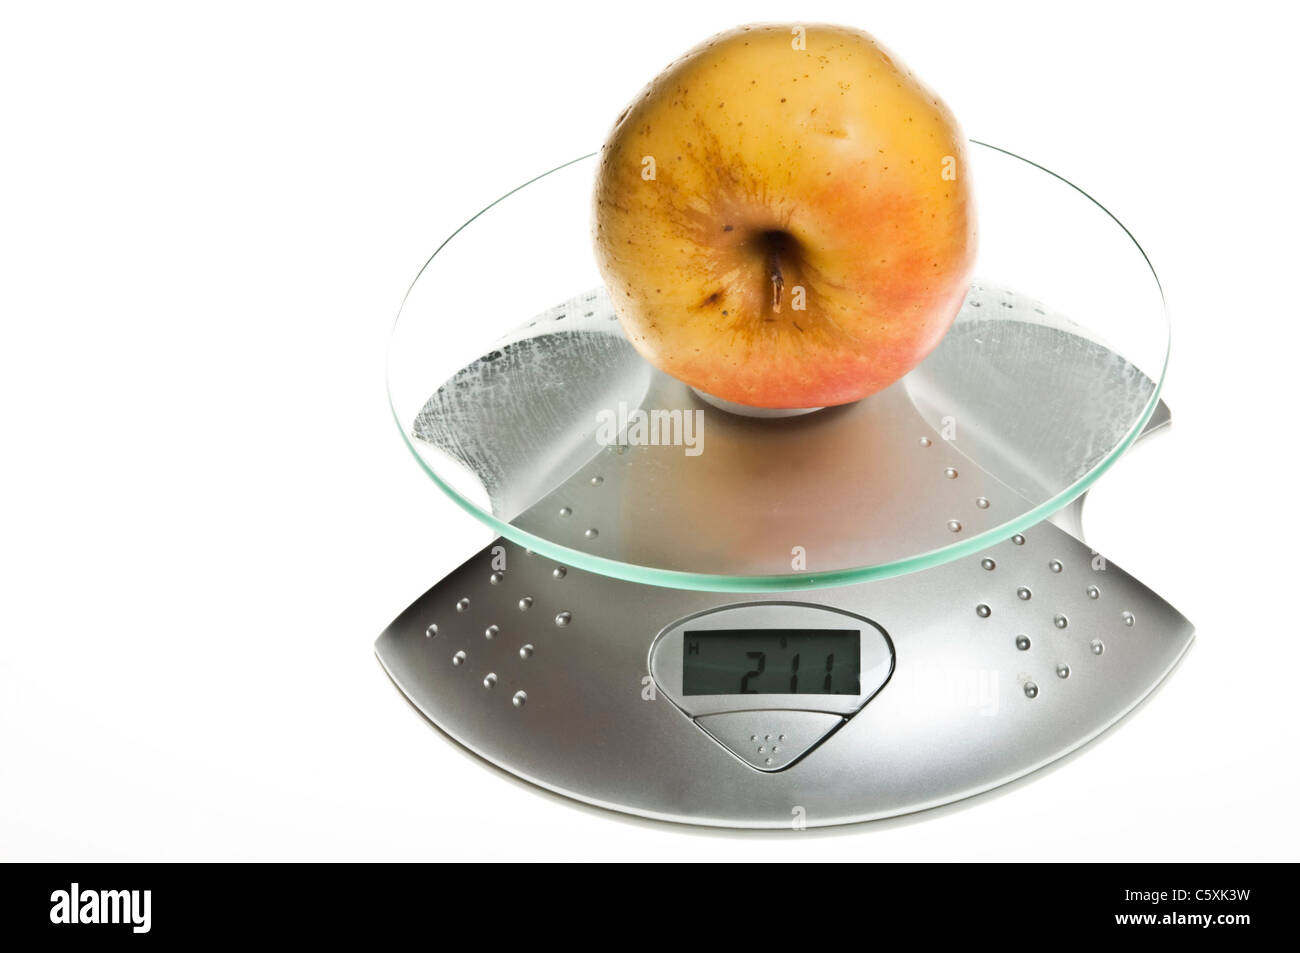 Apple jaune isolé sur l'échelle de l'alimentation Banque D'Images